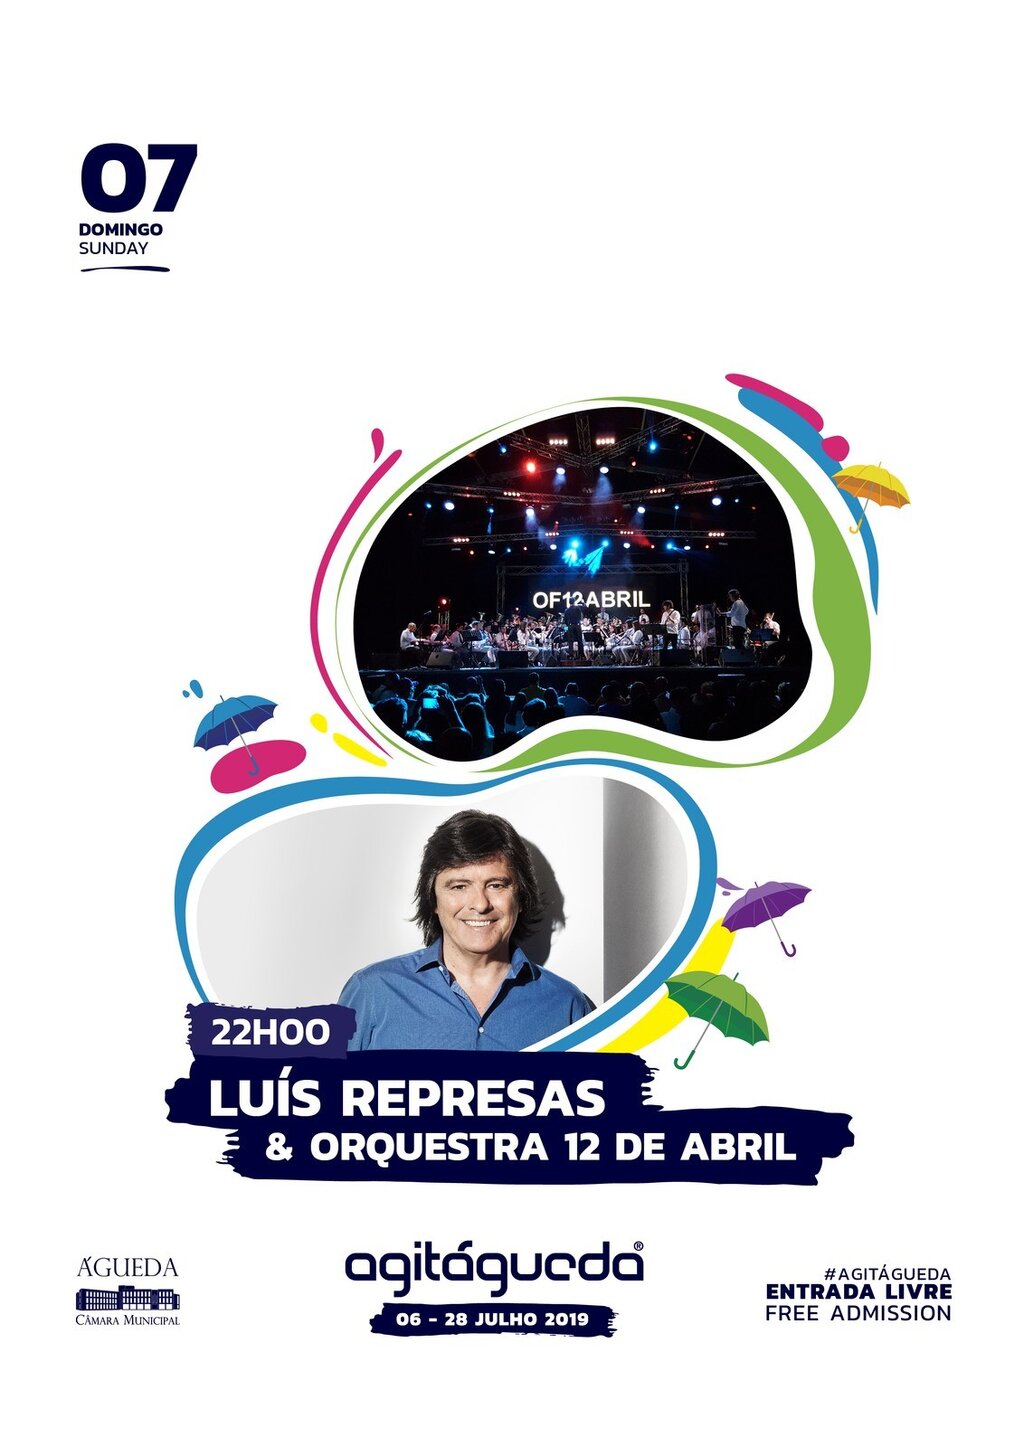 Luis Represas & Orquestra 12 de abril - AgitÁgueda